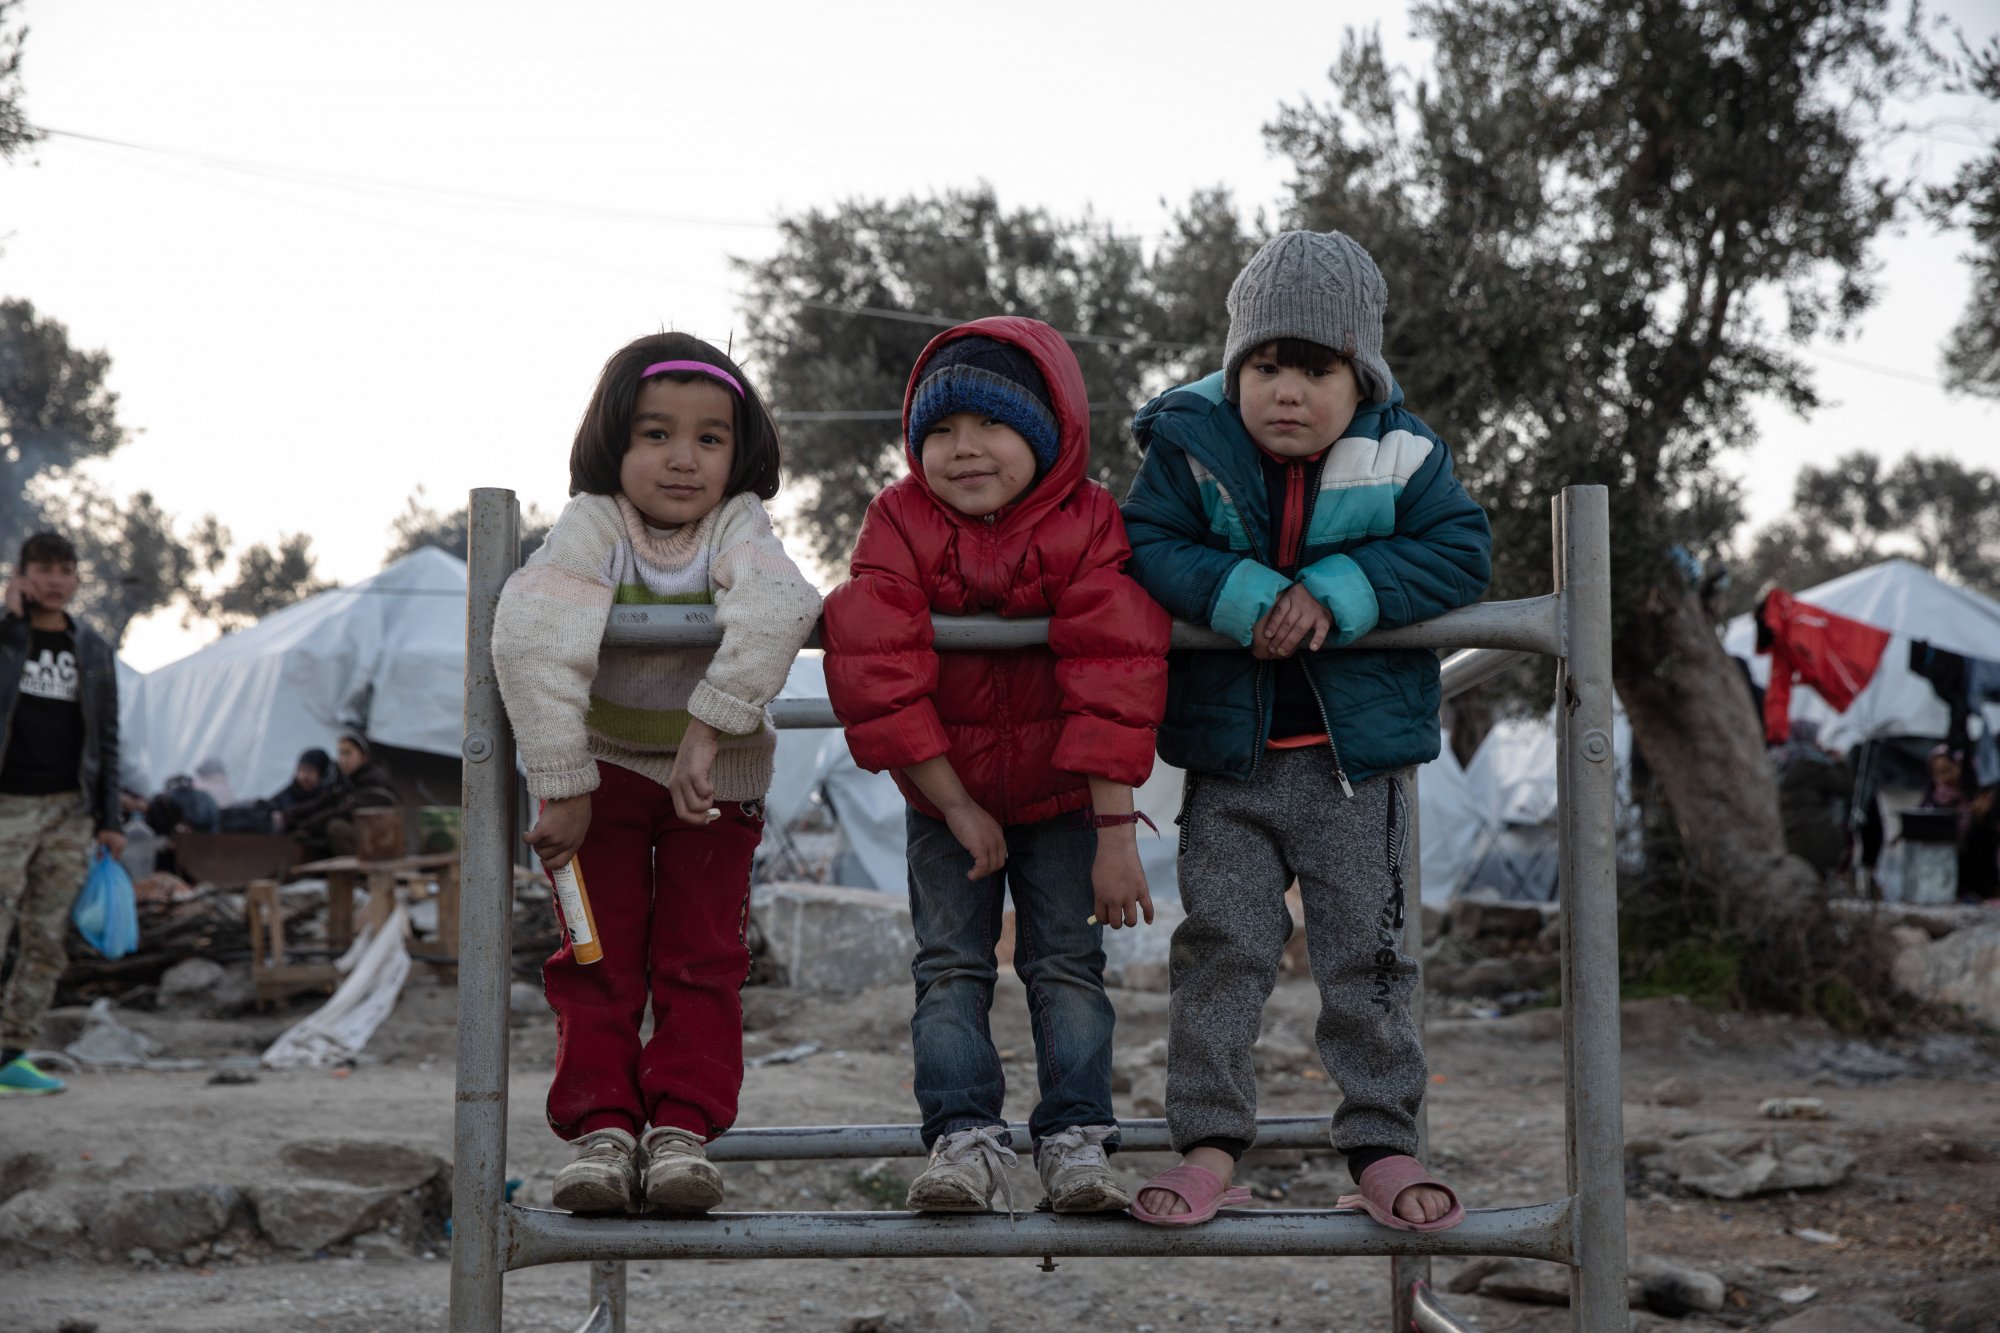 Εκατομμύρια παιδιά στην προσφυγιά εξαιτίας κλιματικών καταστροφών – Συγκλονιστική έκθεση από τη UNICEF